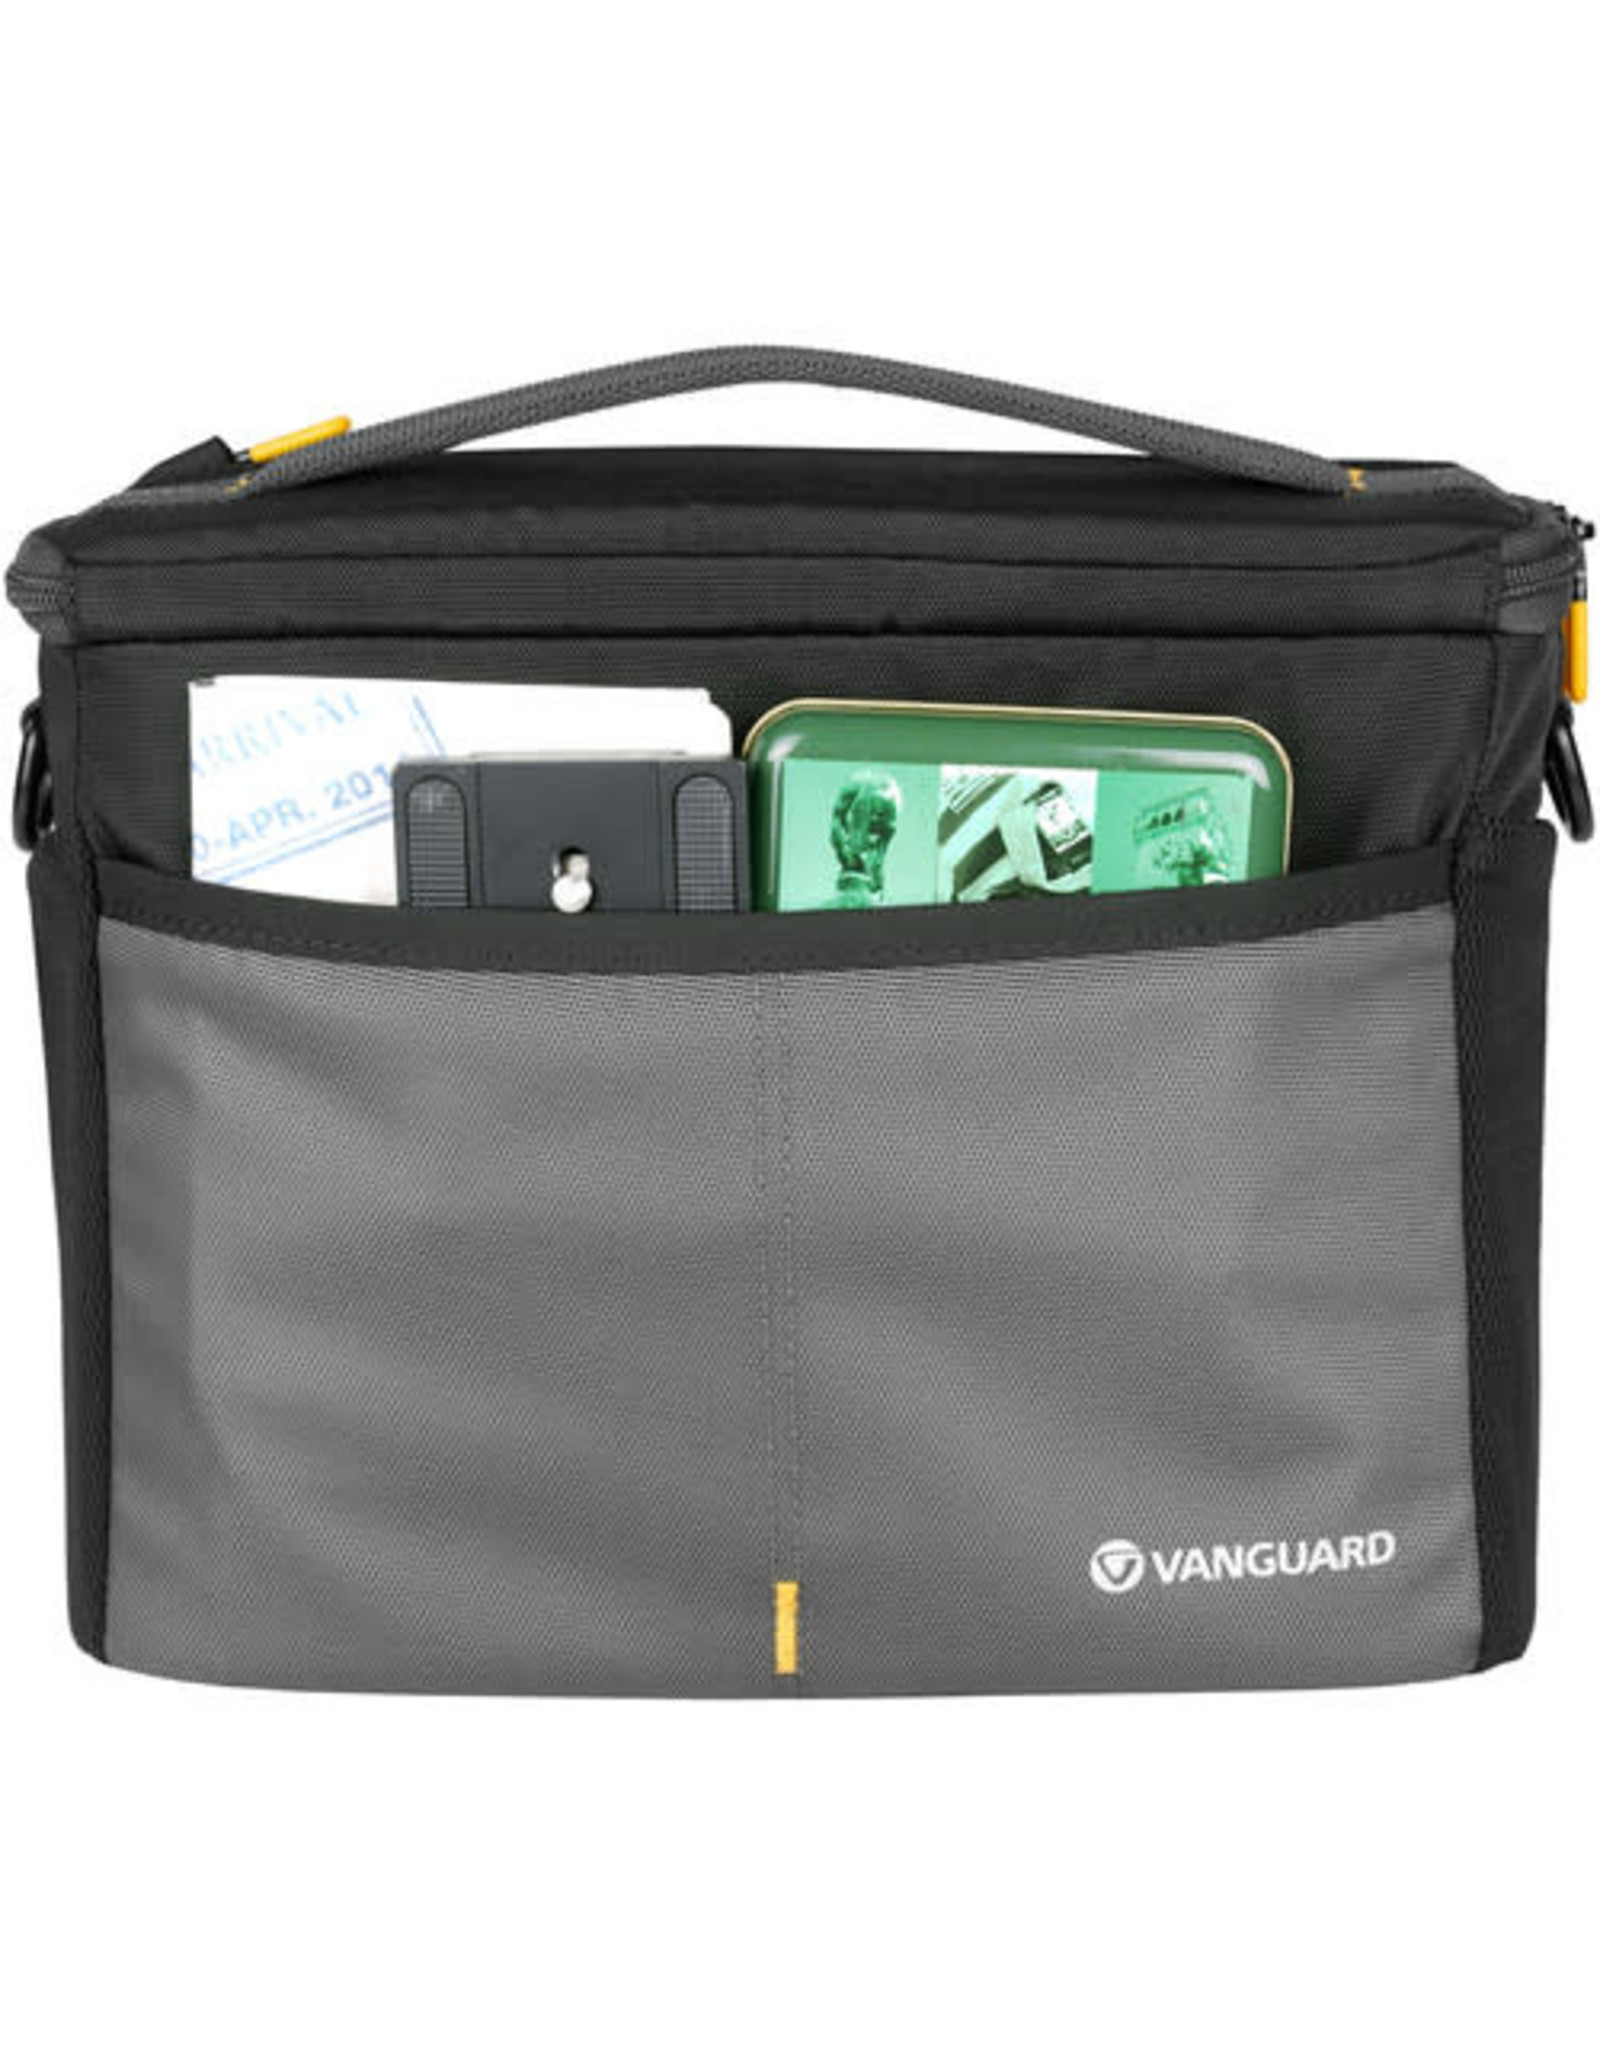 Vanguard Vanguard VEO BIB T25 Camera Bag in Bag